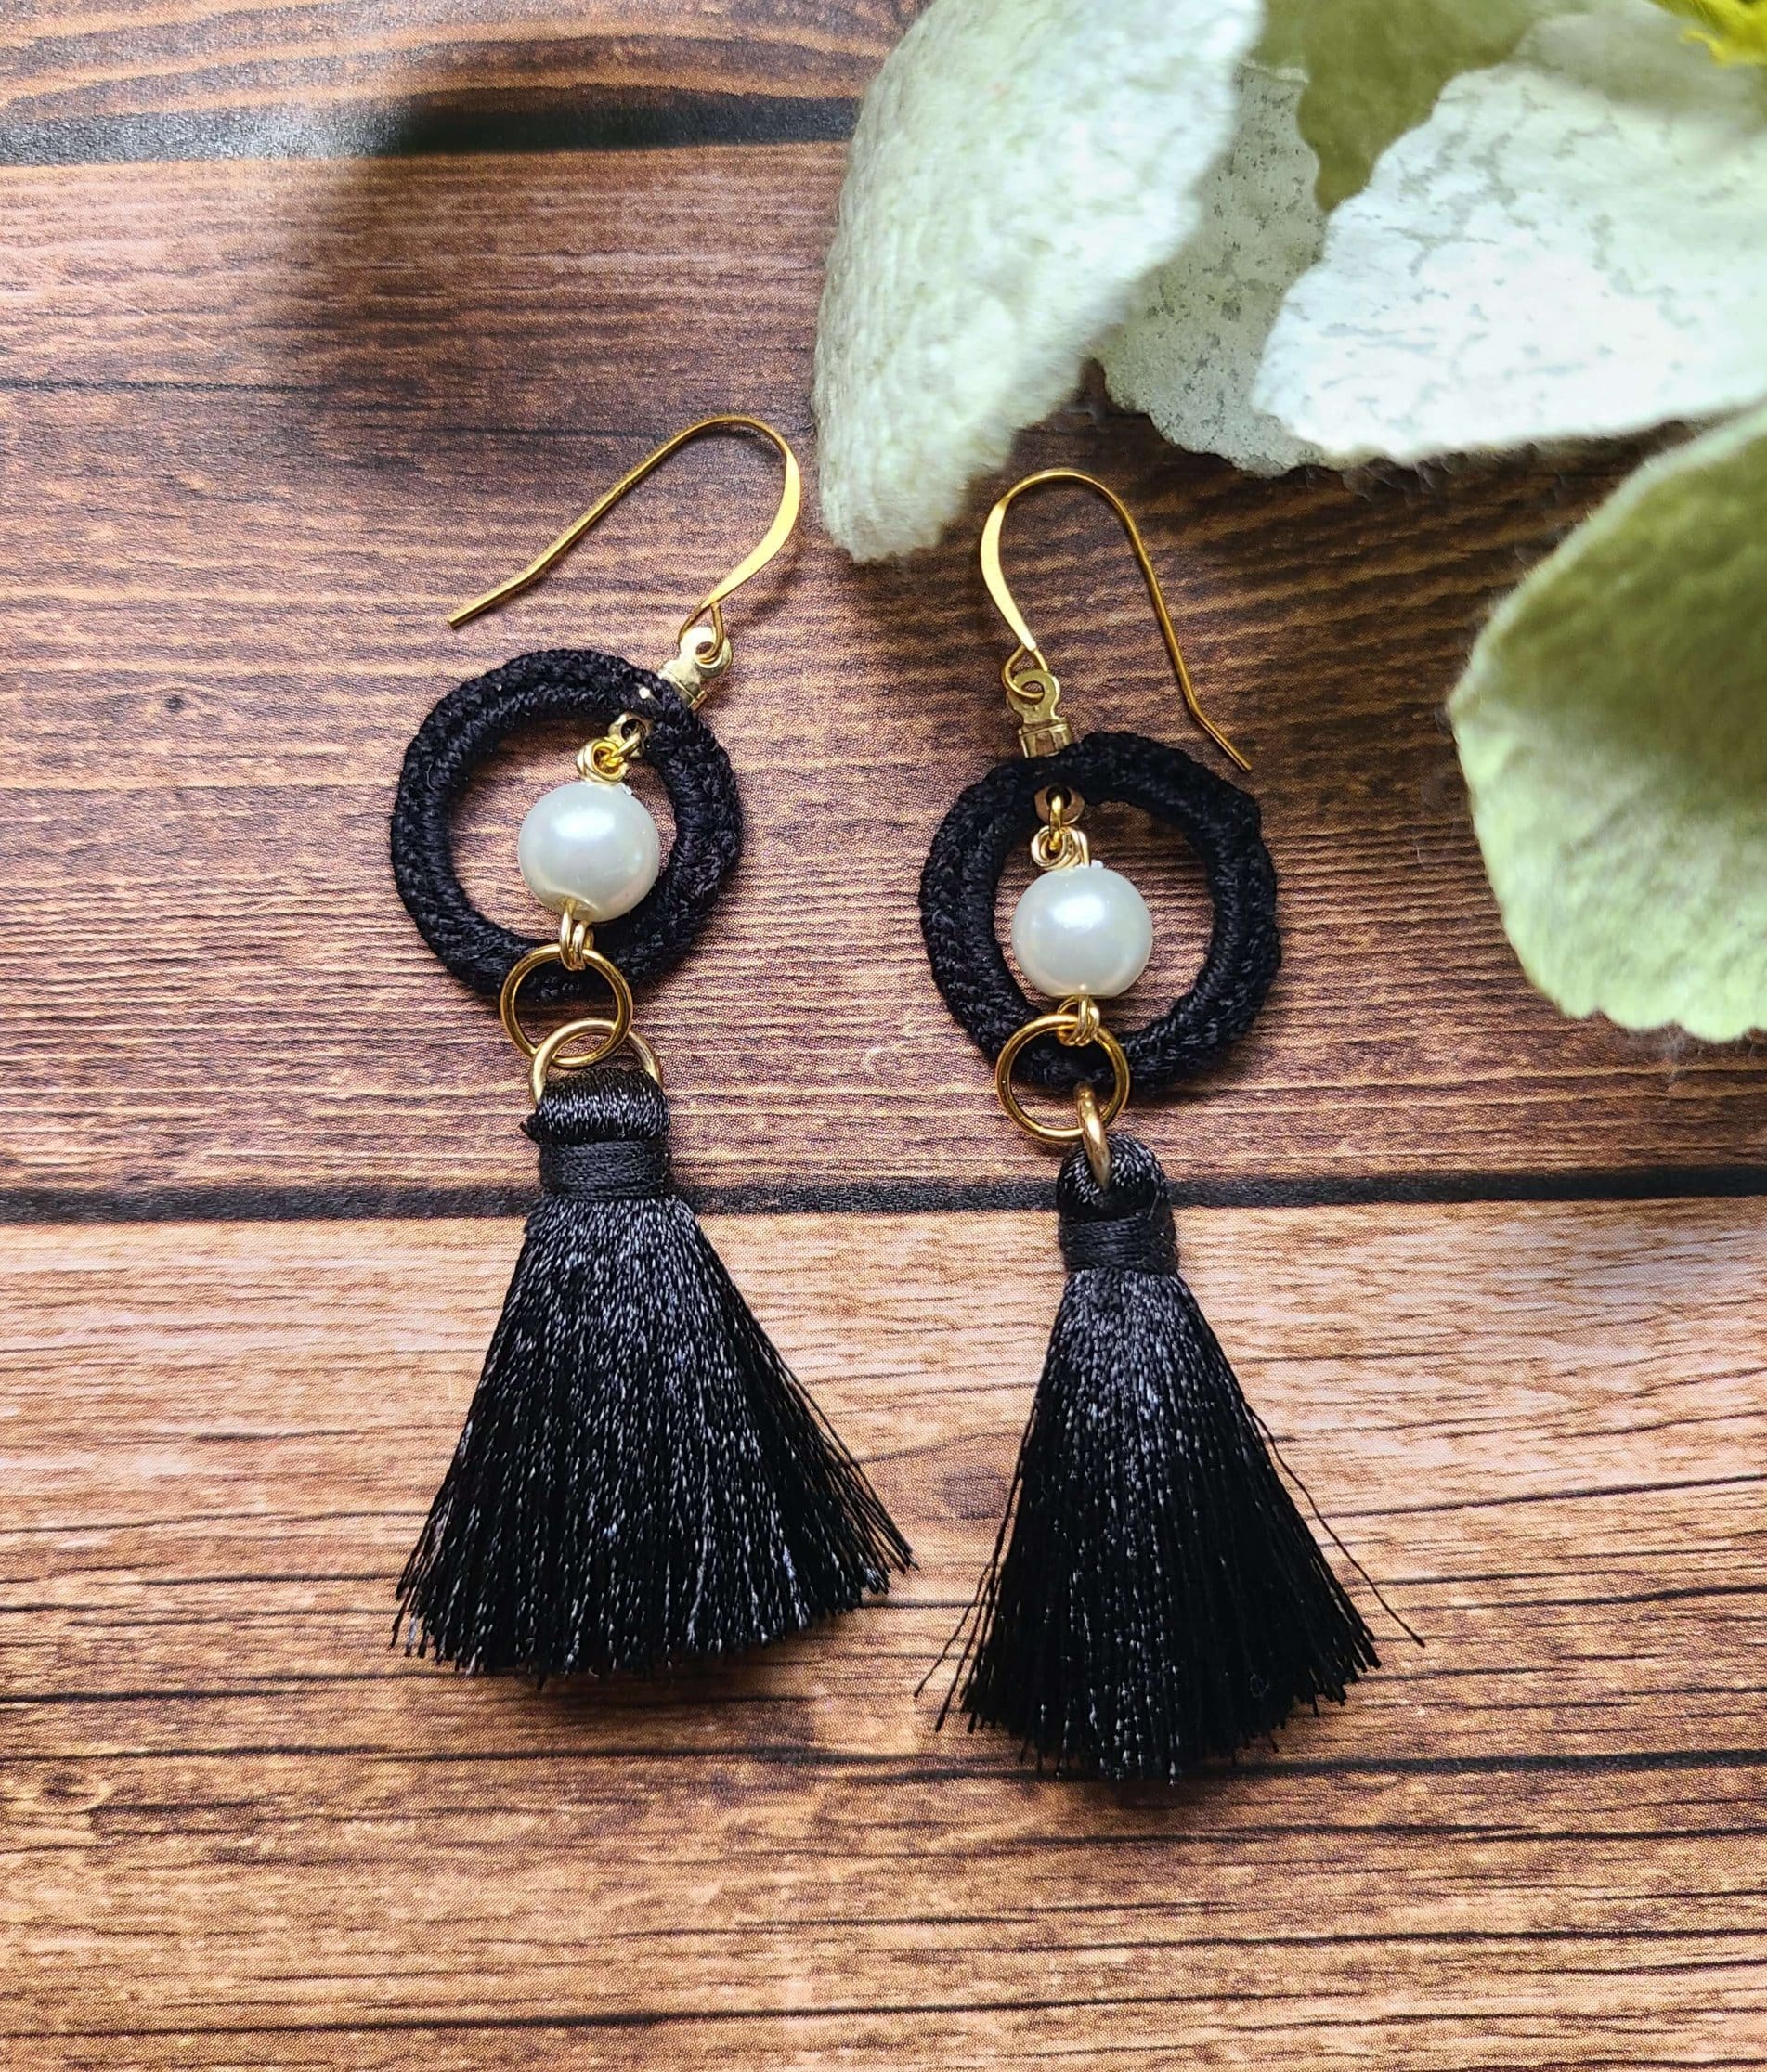 Black tassel pearl earrings on a wooden background.